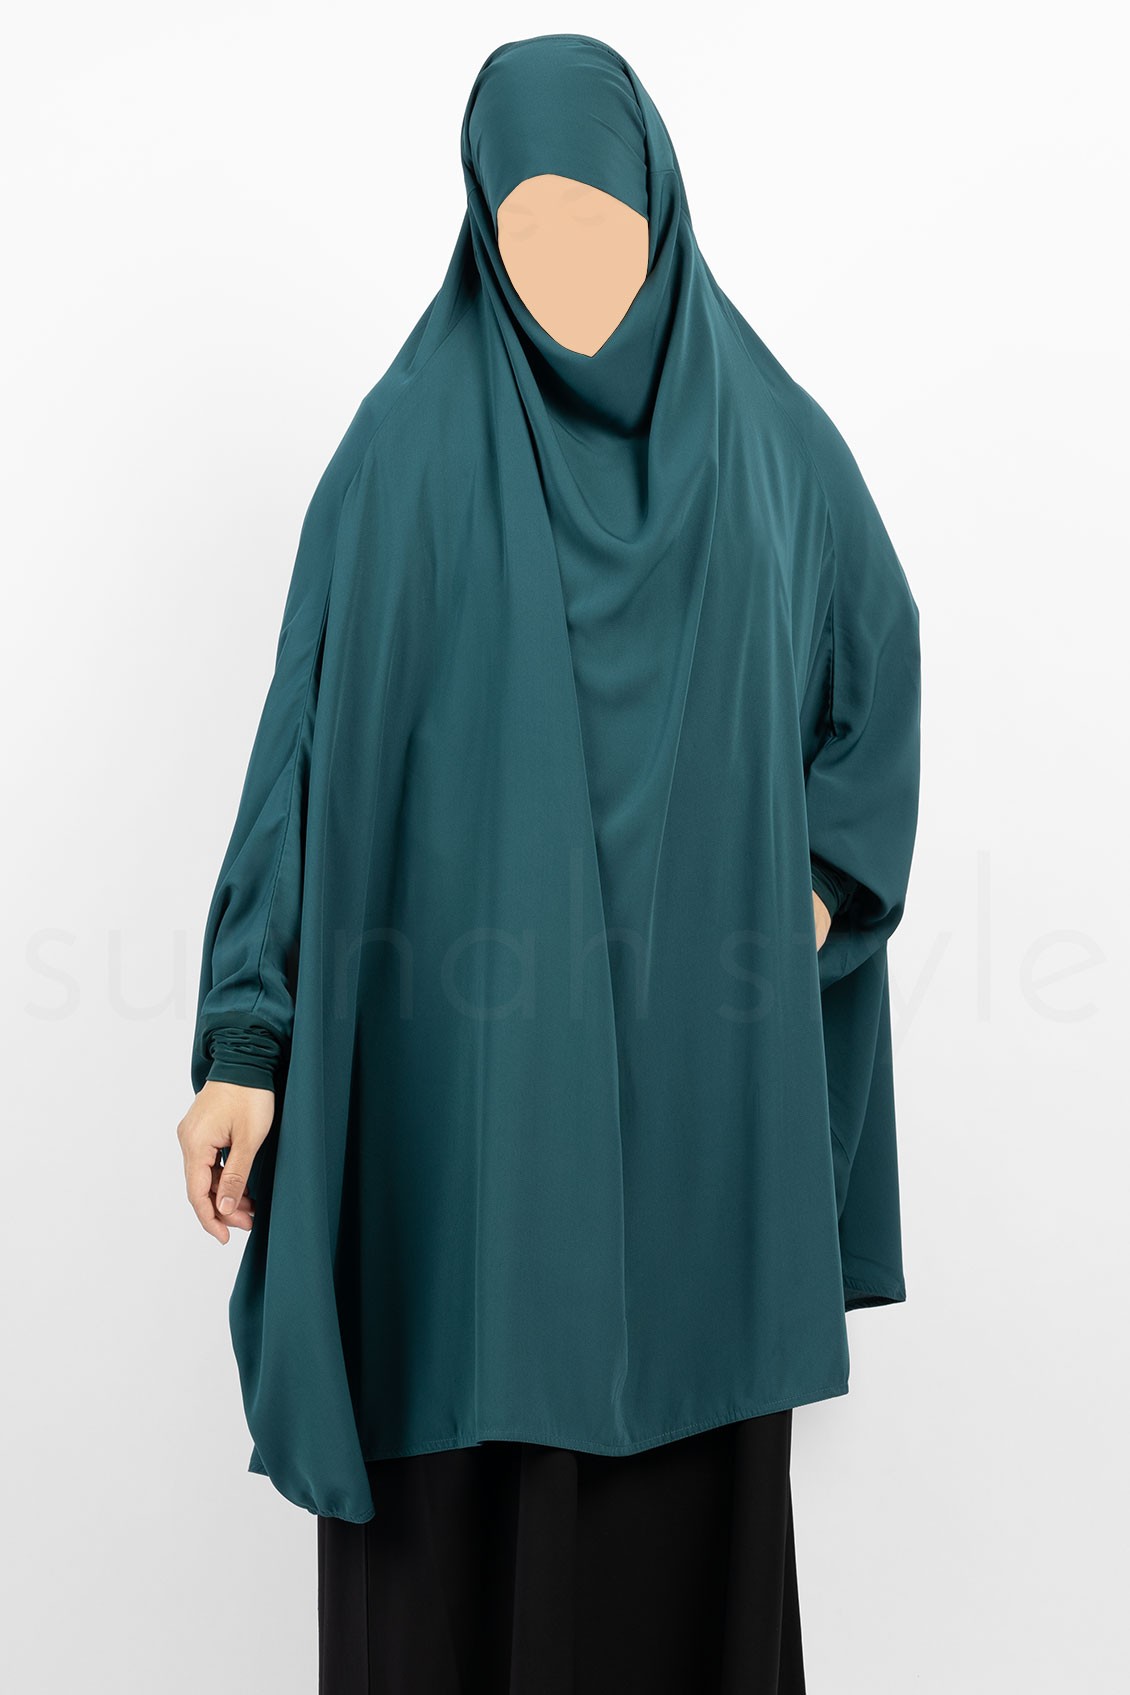 Sunnah Style Plain Jilbab Top Knee Length Teal